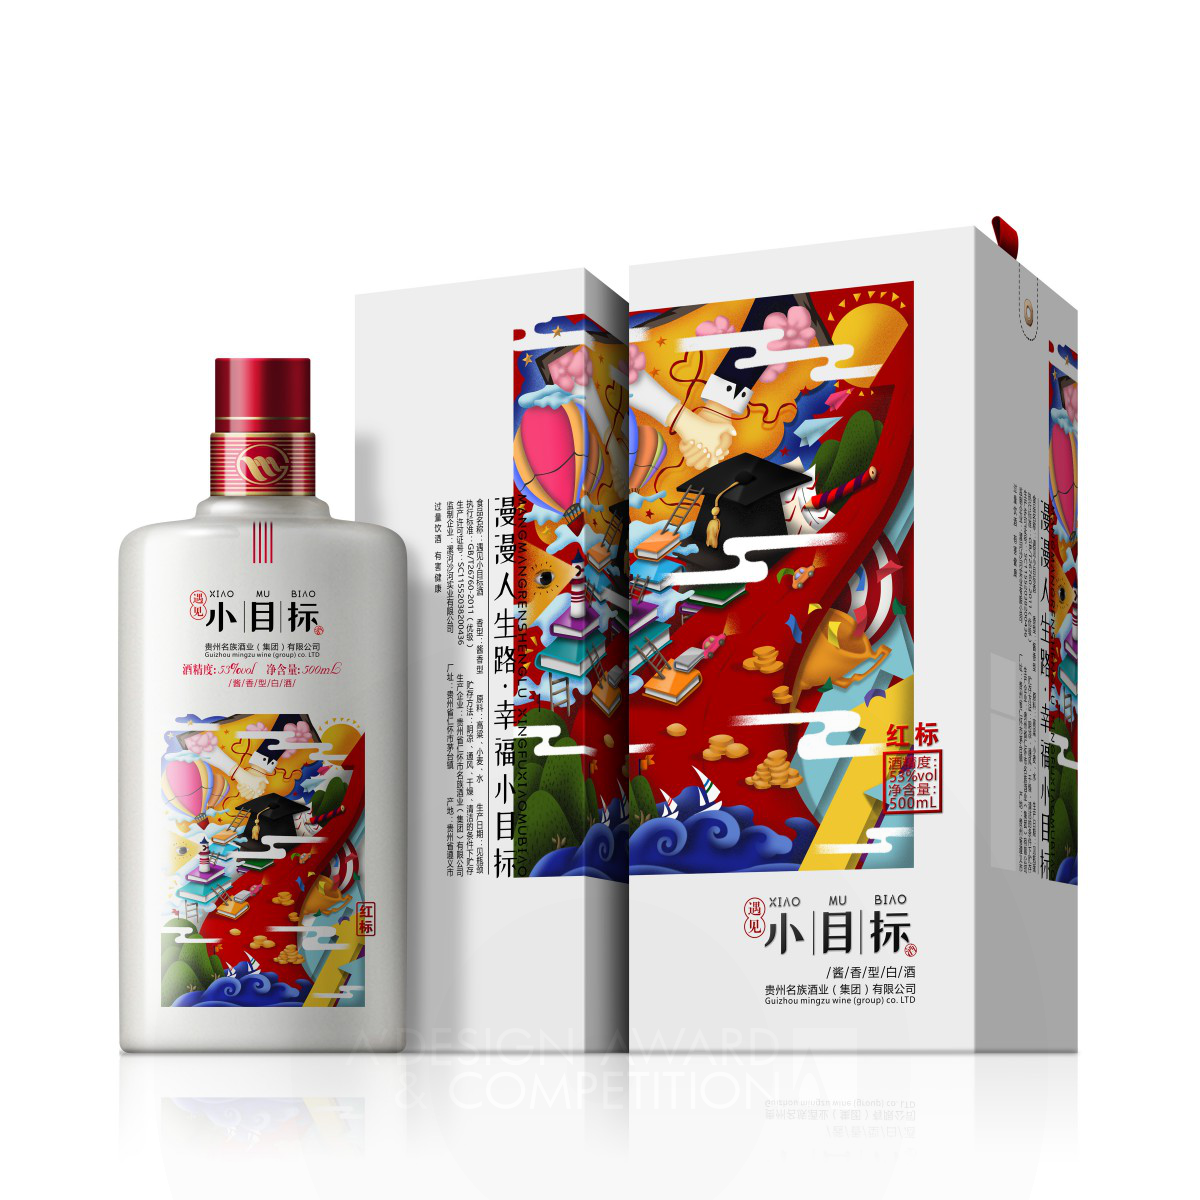 Xiao Mu Biao liquor by Zeng Li